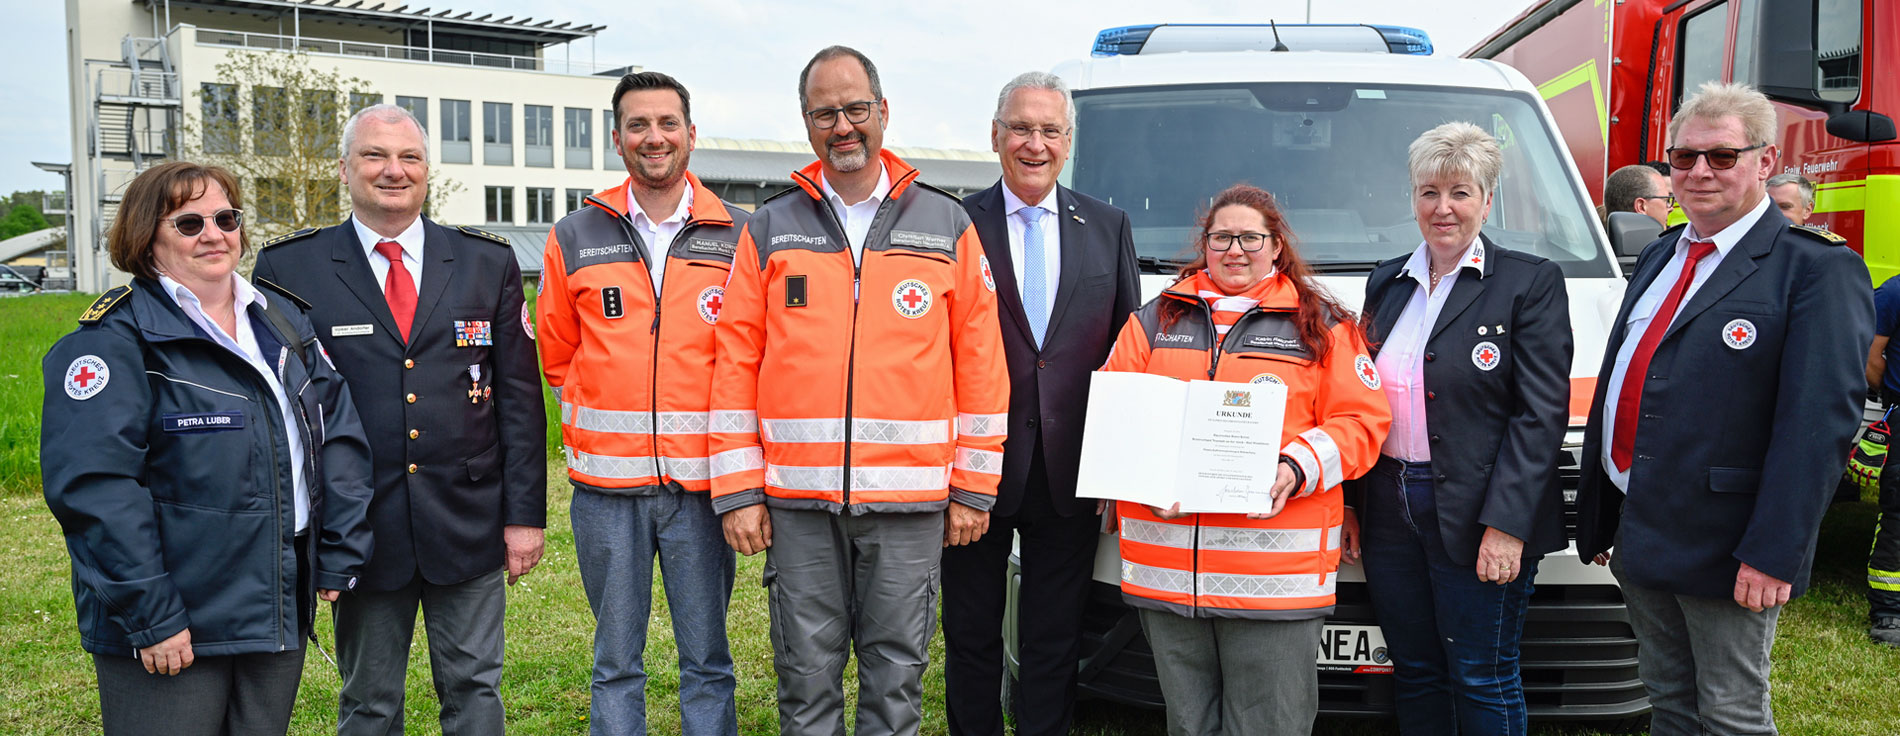 Gruppenfoto vor neuem Fahrzeug: Einsatzkräfte des BRK, Innenminister Herrmann und BRK-Präsidentin Angelika Schorer